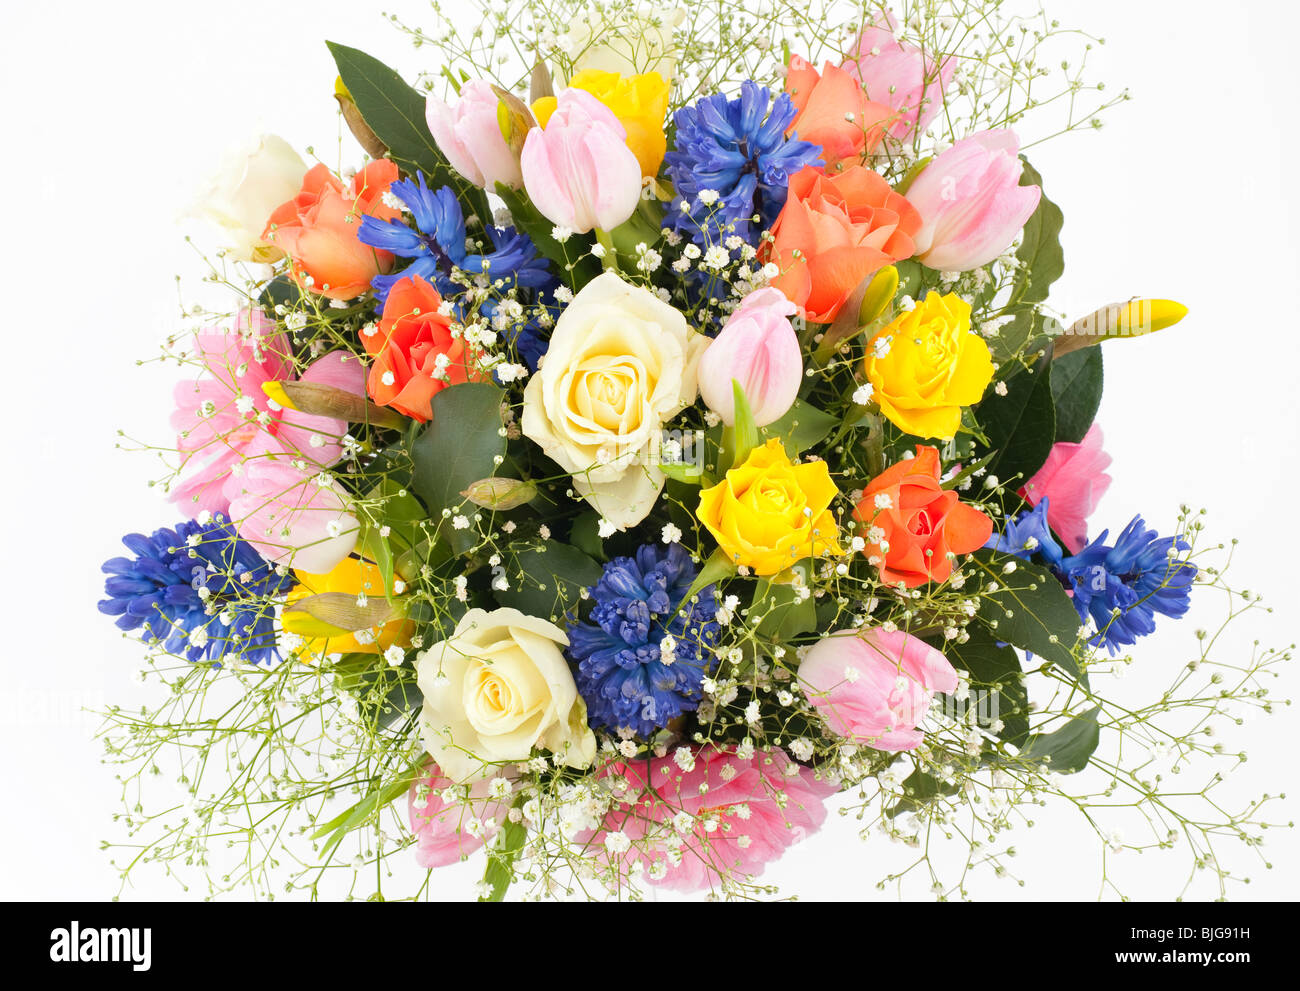 Frühling Gesteck in Vase mit Rosen, Tulpen, Hyazinthen, Narzissen und grüne  Blätter Stockfotografie - Alamy